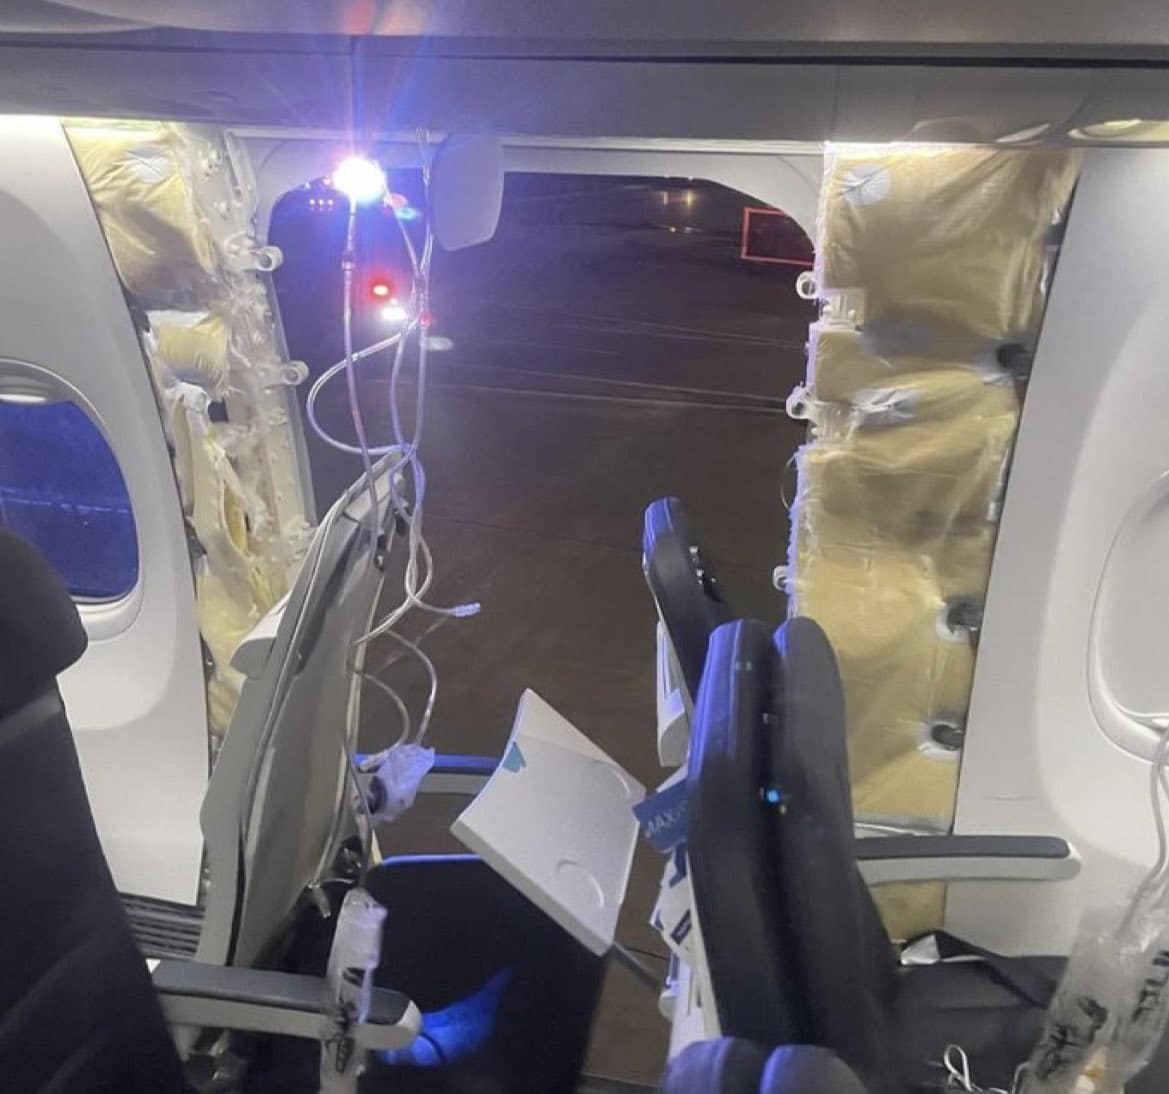 Banyak reaksi setelah hilangnya jendela dan panel badan pesawat di Alaska Boeing 737 MAX 9: Boeing bekerja sama, FAA memerintahkan larangan terbang, intervensi pengacara,...